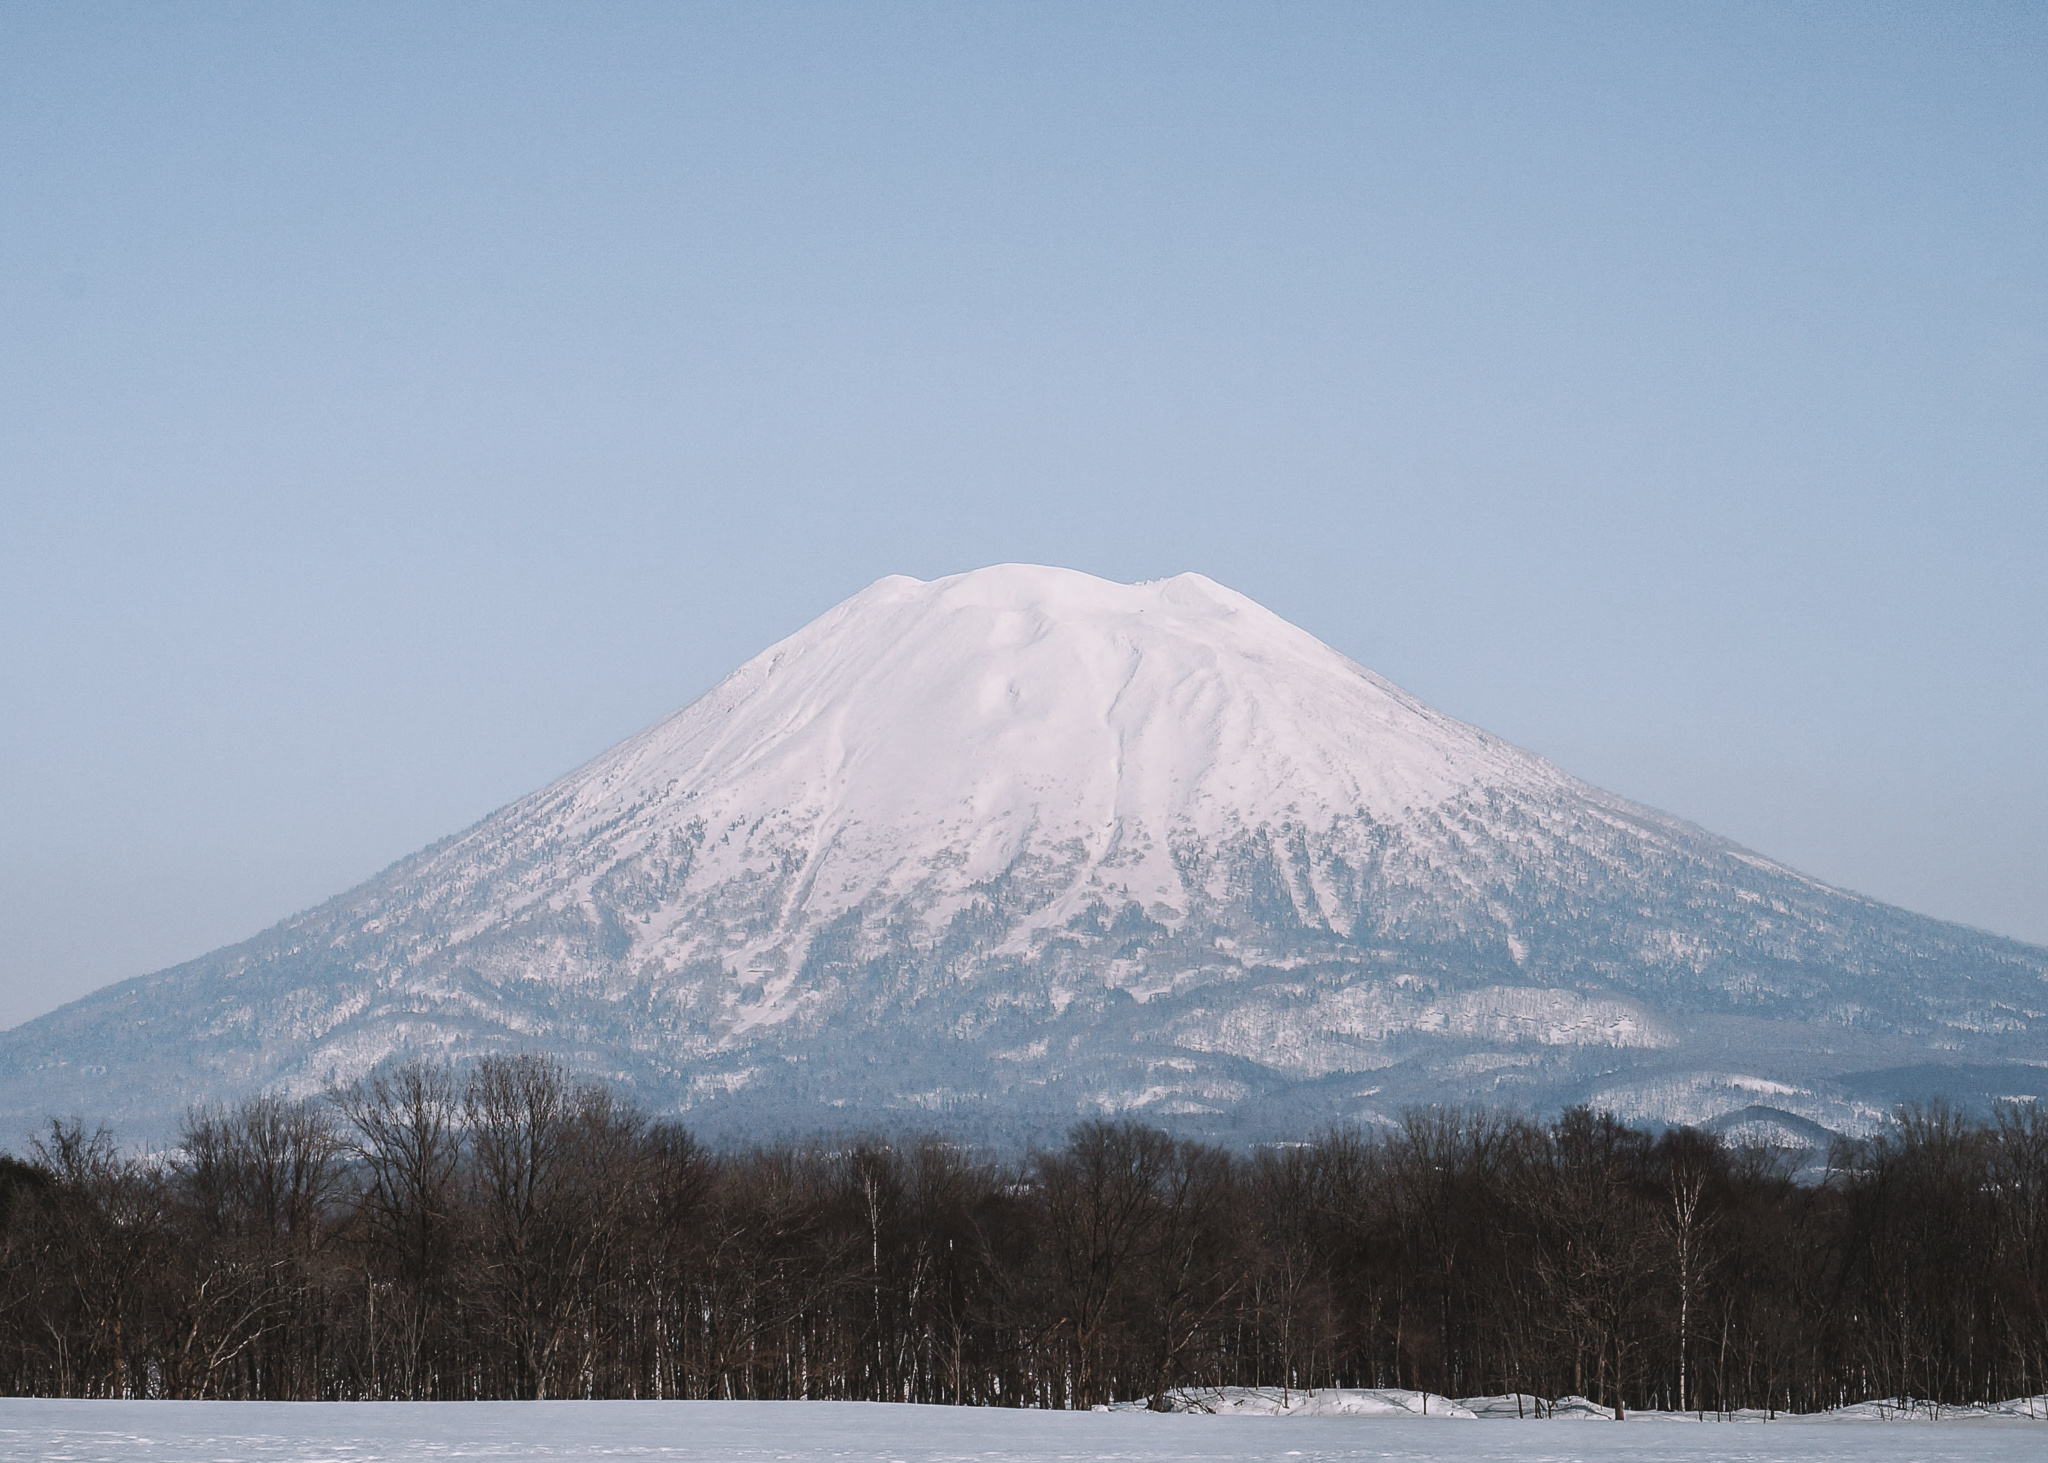 snowy capped Mt. Yotei in Hokkaido